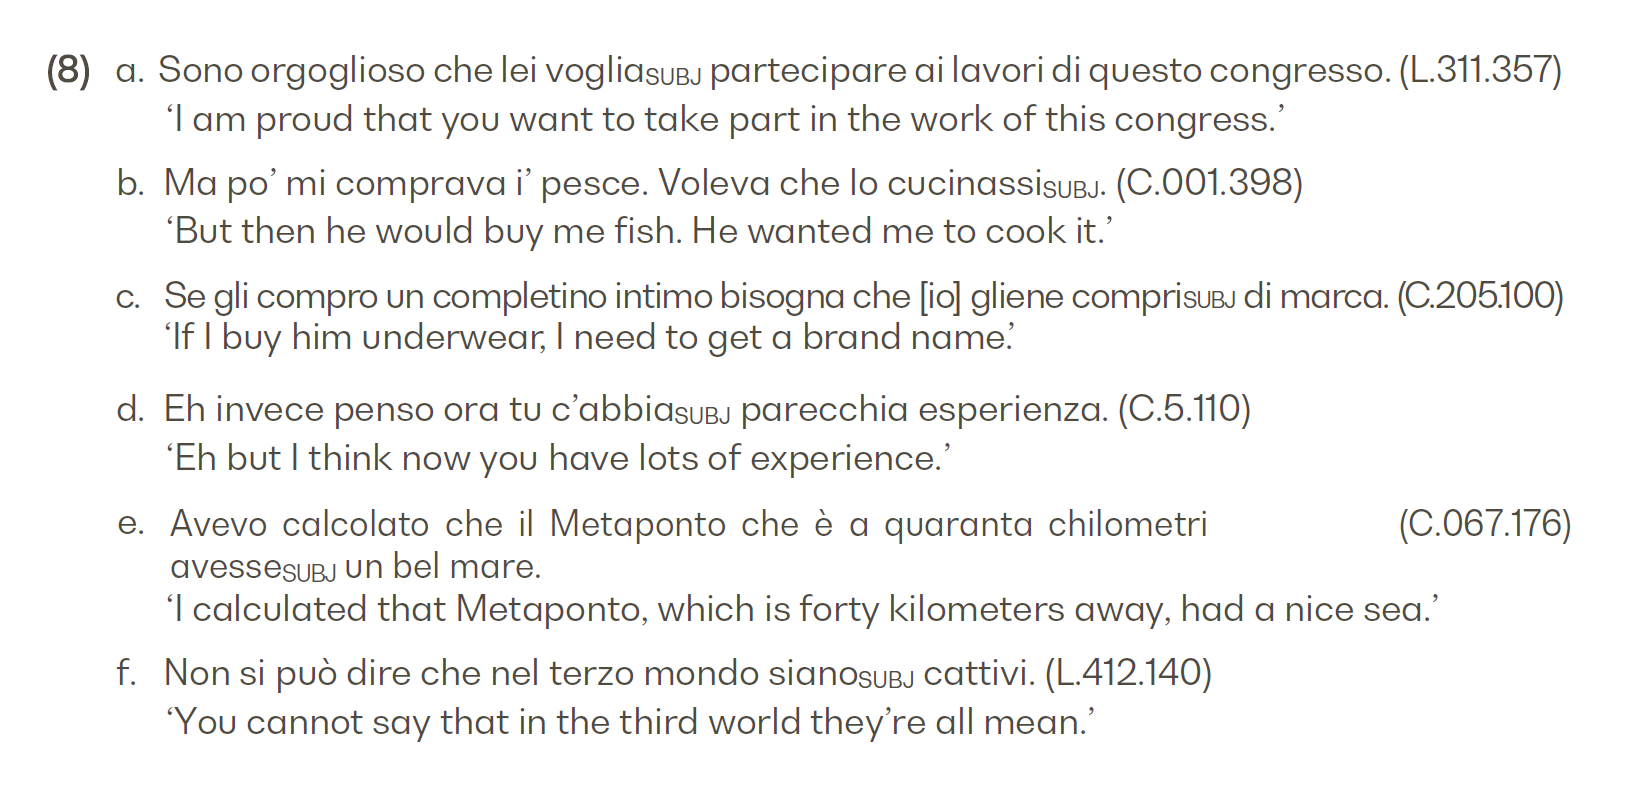 Grammatica Italiana: Italiano comune e lingua letteraria